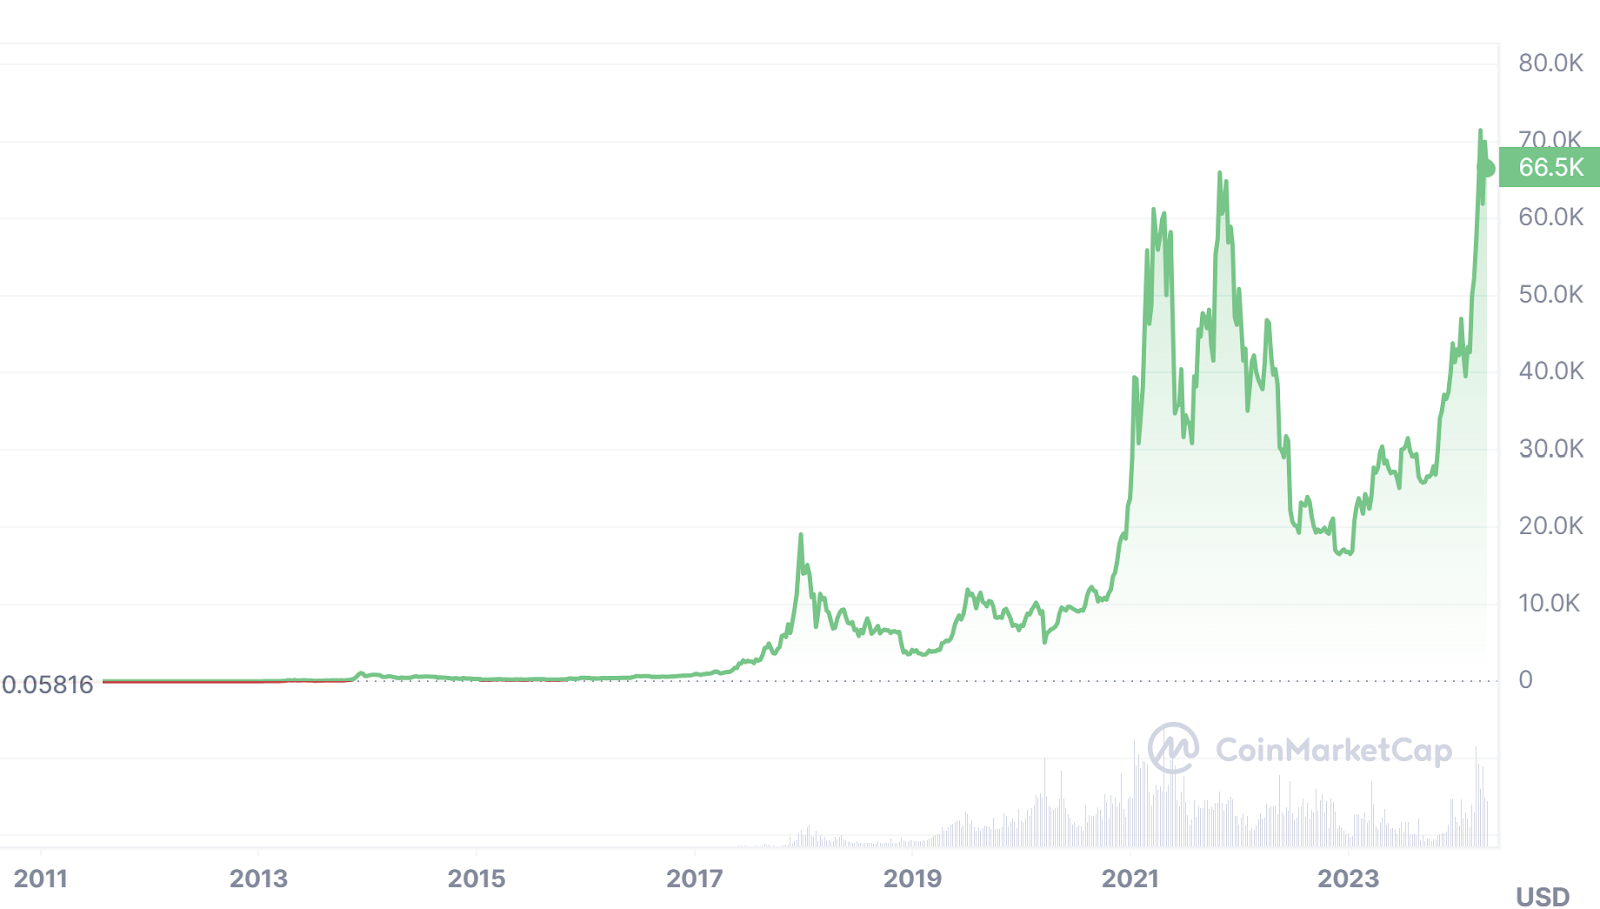 Bitcoin-USD Price Chart Via CoinMarketCap